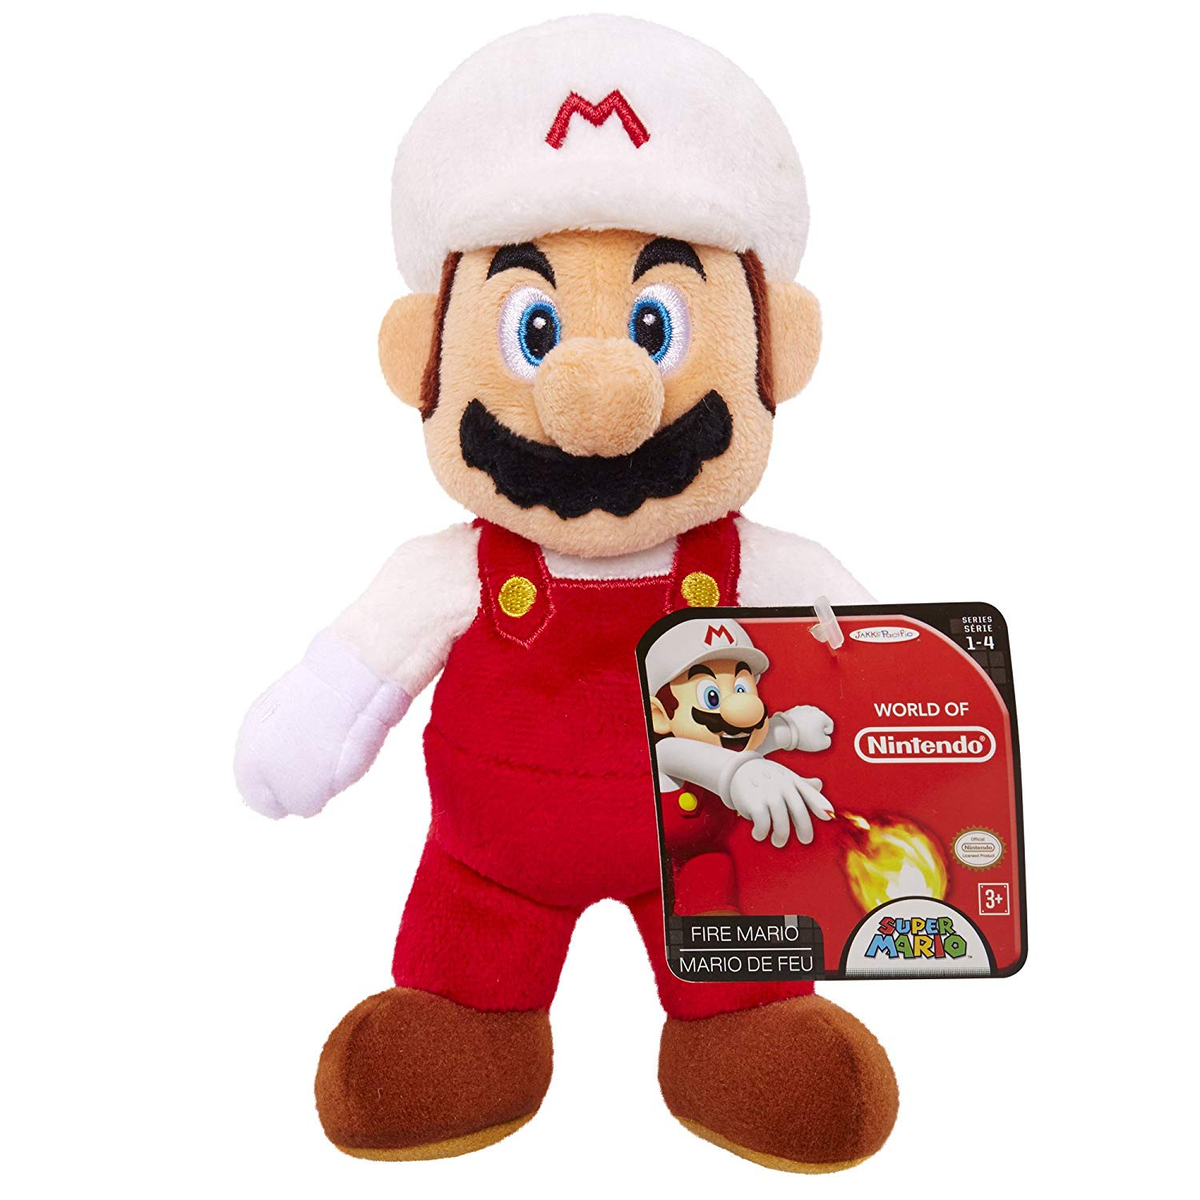 Игрушки Марио. Мягкие игрушки из Марио. Марио мягкая игрушка 30 см. Mario Plush Simba. Nintendo fire